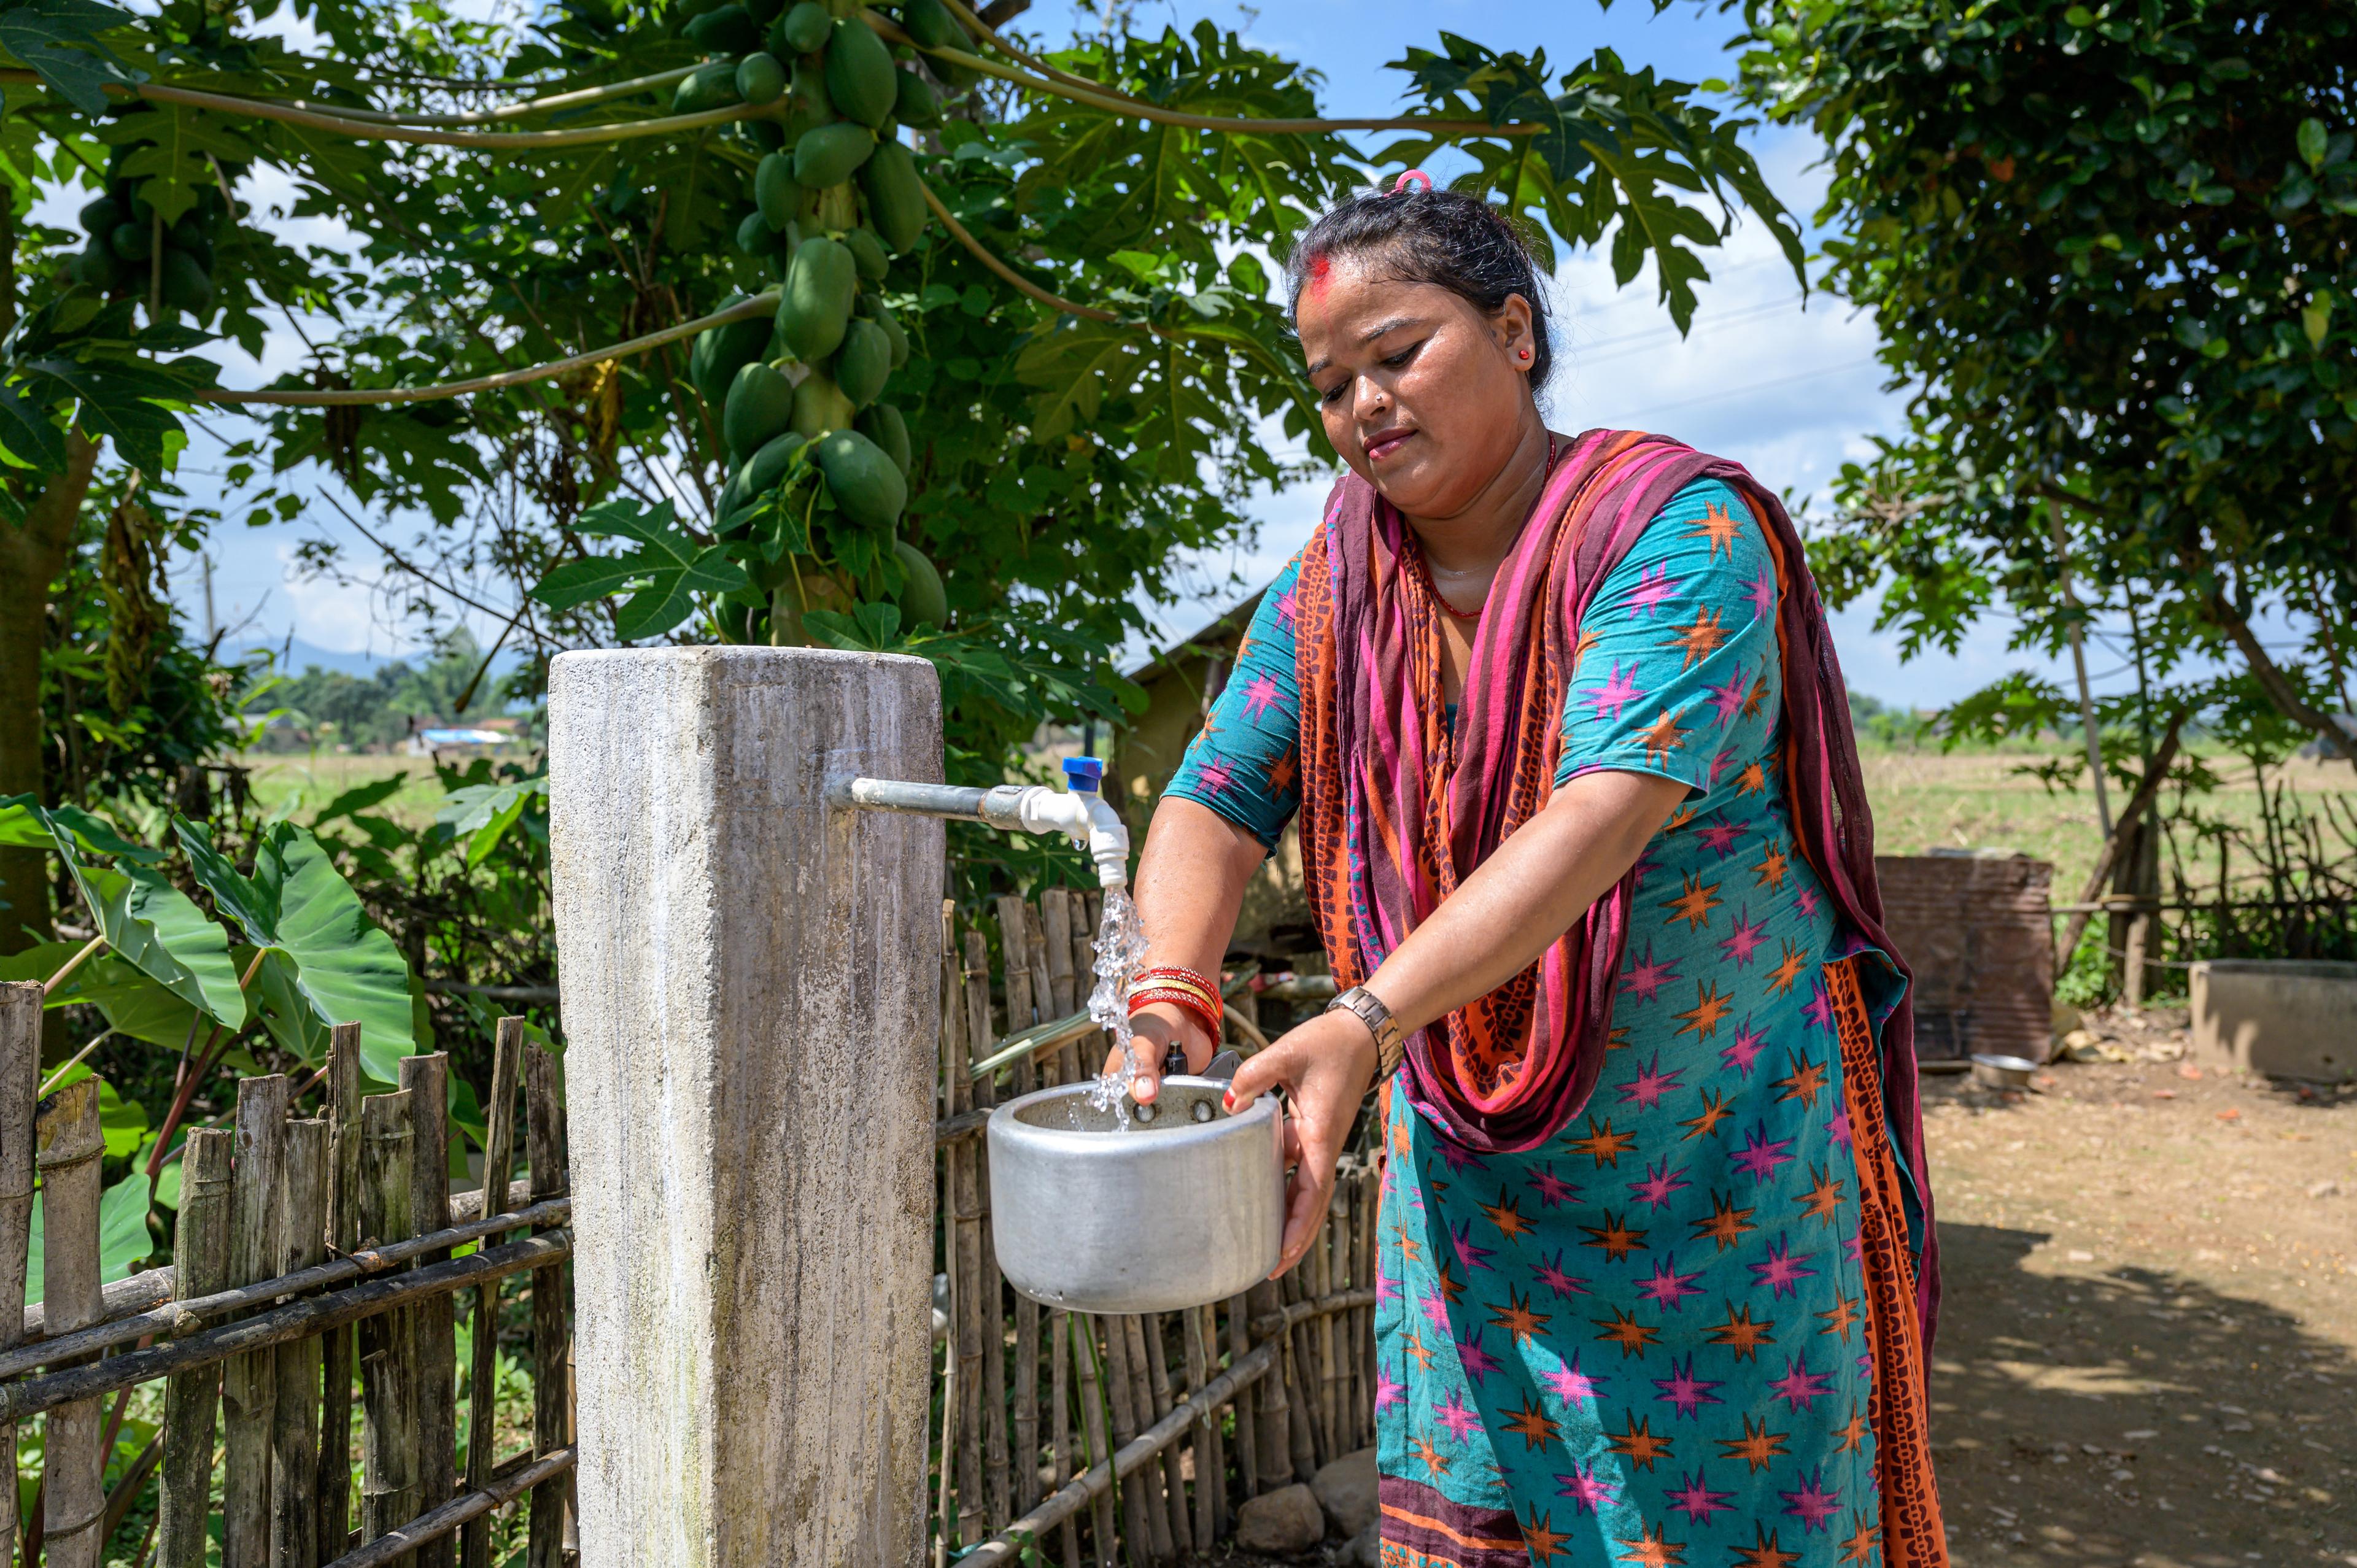 Eine bunt gekleidete Frau bedient in einem Garten im Freien einen Wasserhahn. Sie füllt ein Gefäss, mit Wasser. Im Hintergrund ein grüner Garten.